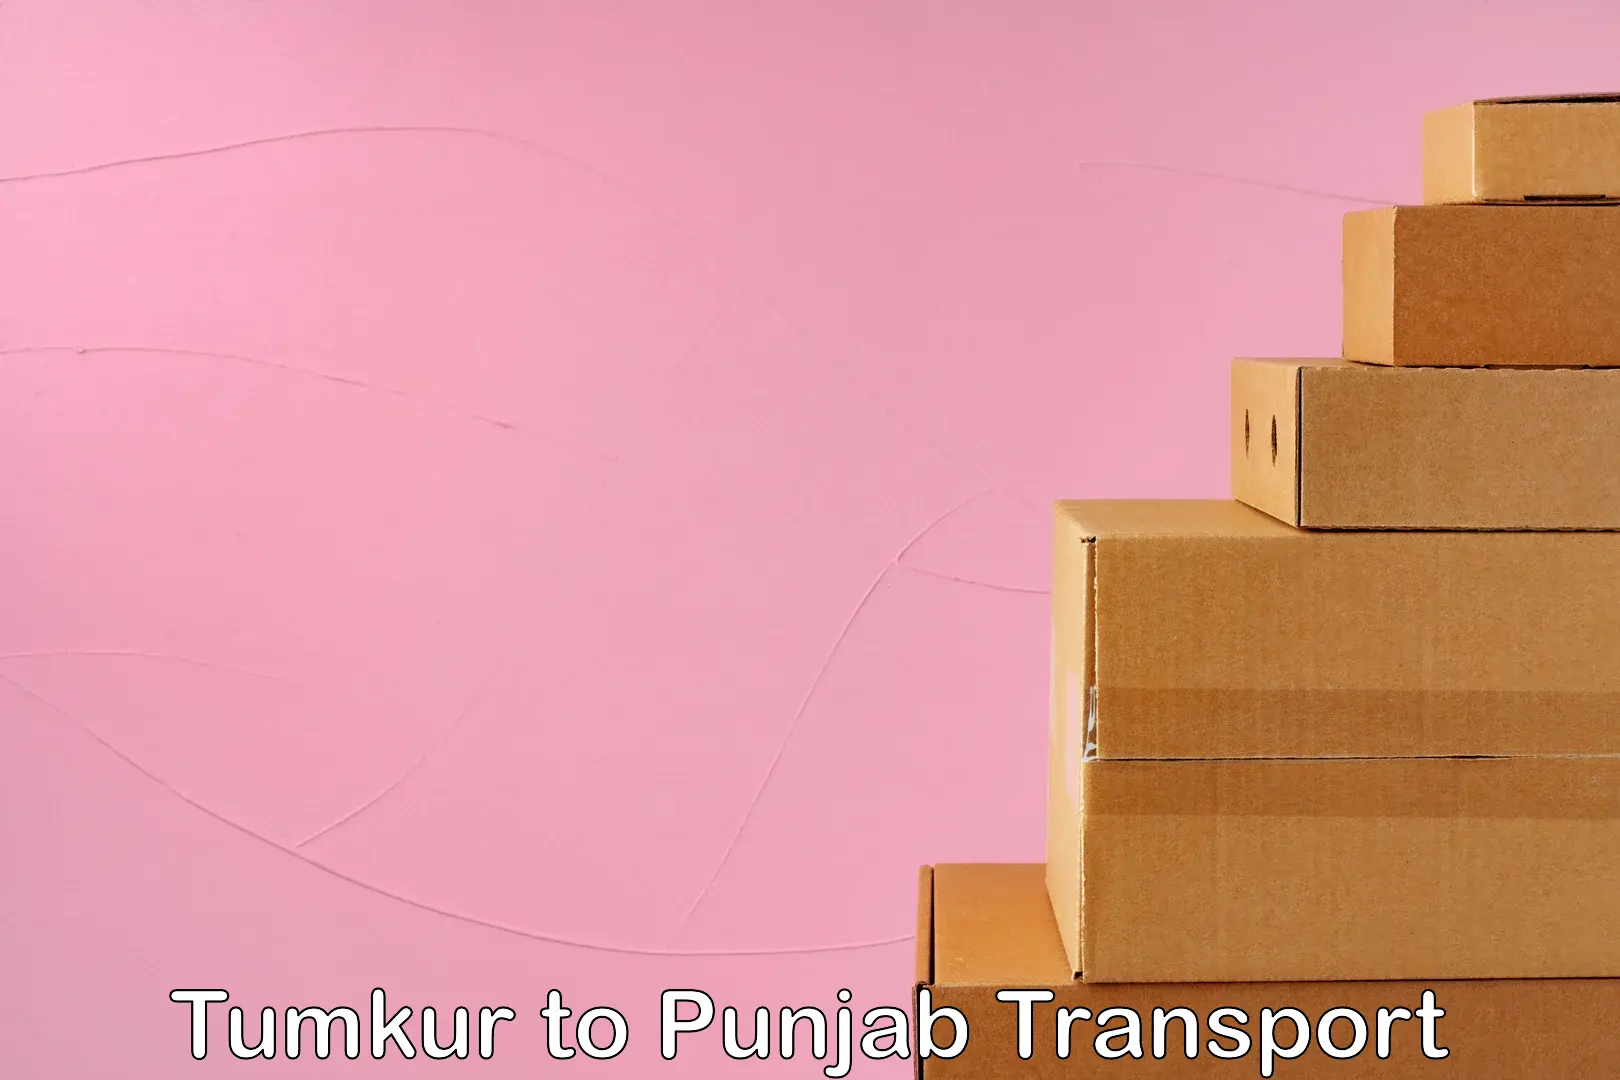 Nearest transport service Tumkur to Zirakpur